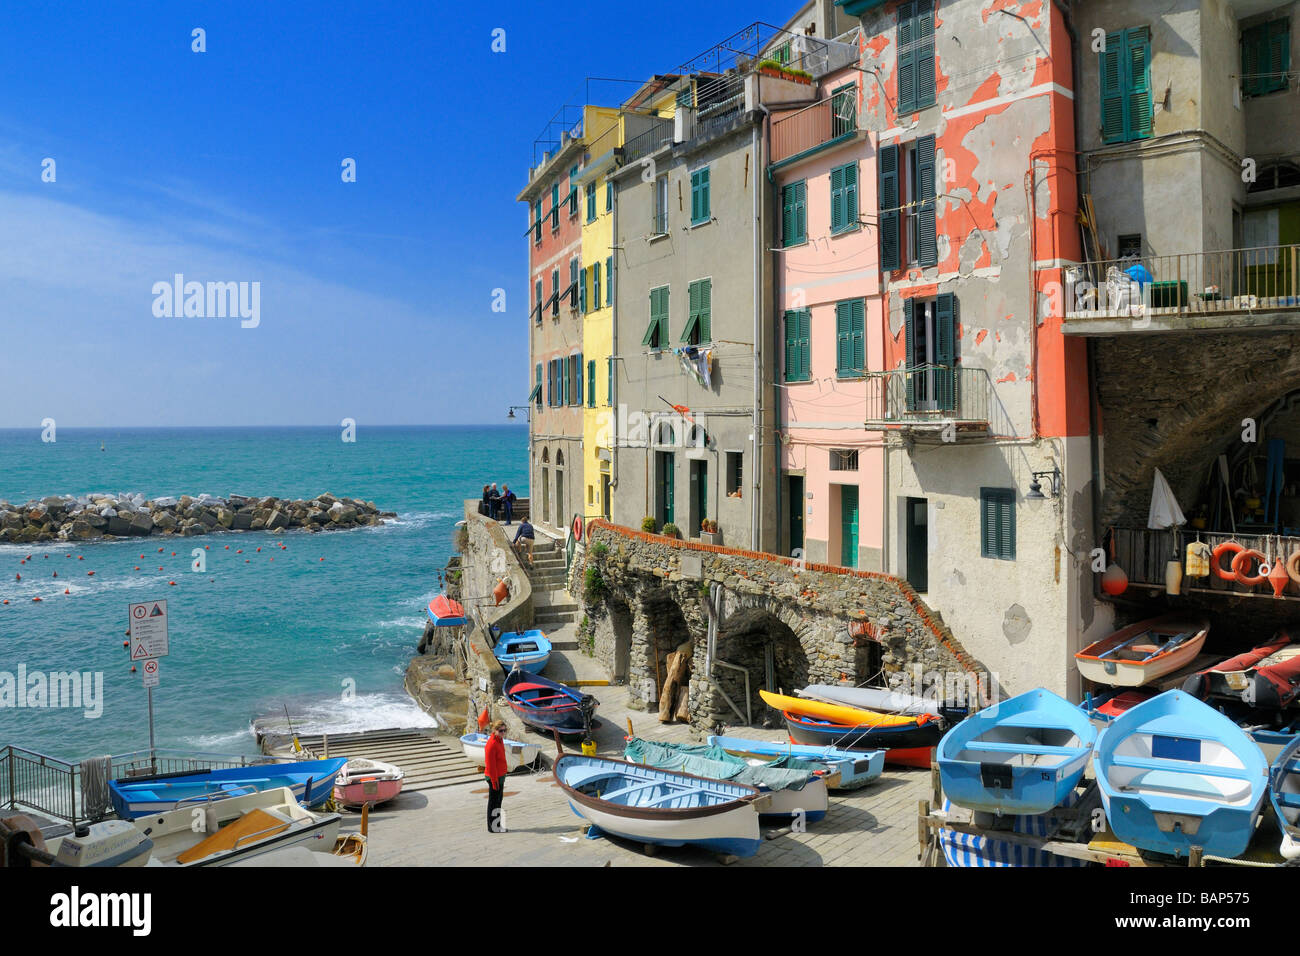 Der Hafen und die Stadt Plaza des kleinen Meer Dorf Riomaggiore Cinque Terre Ligurien Italien Stockfoto